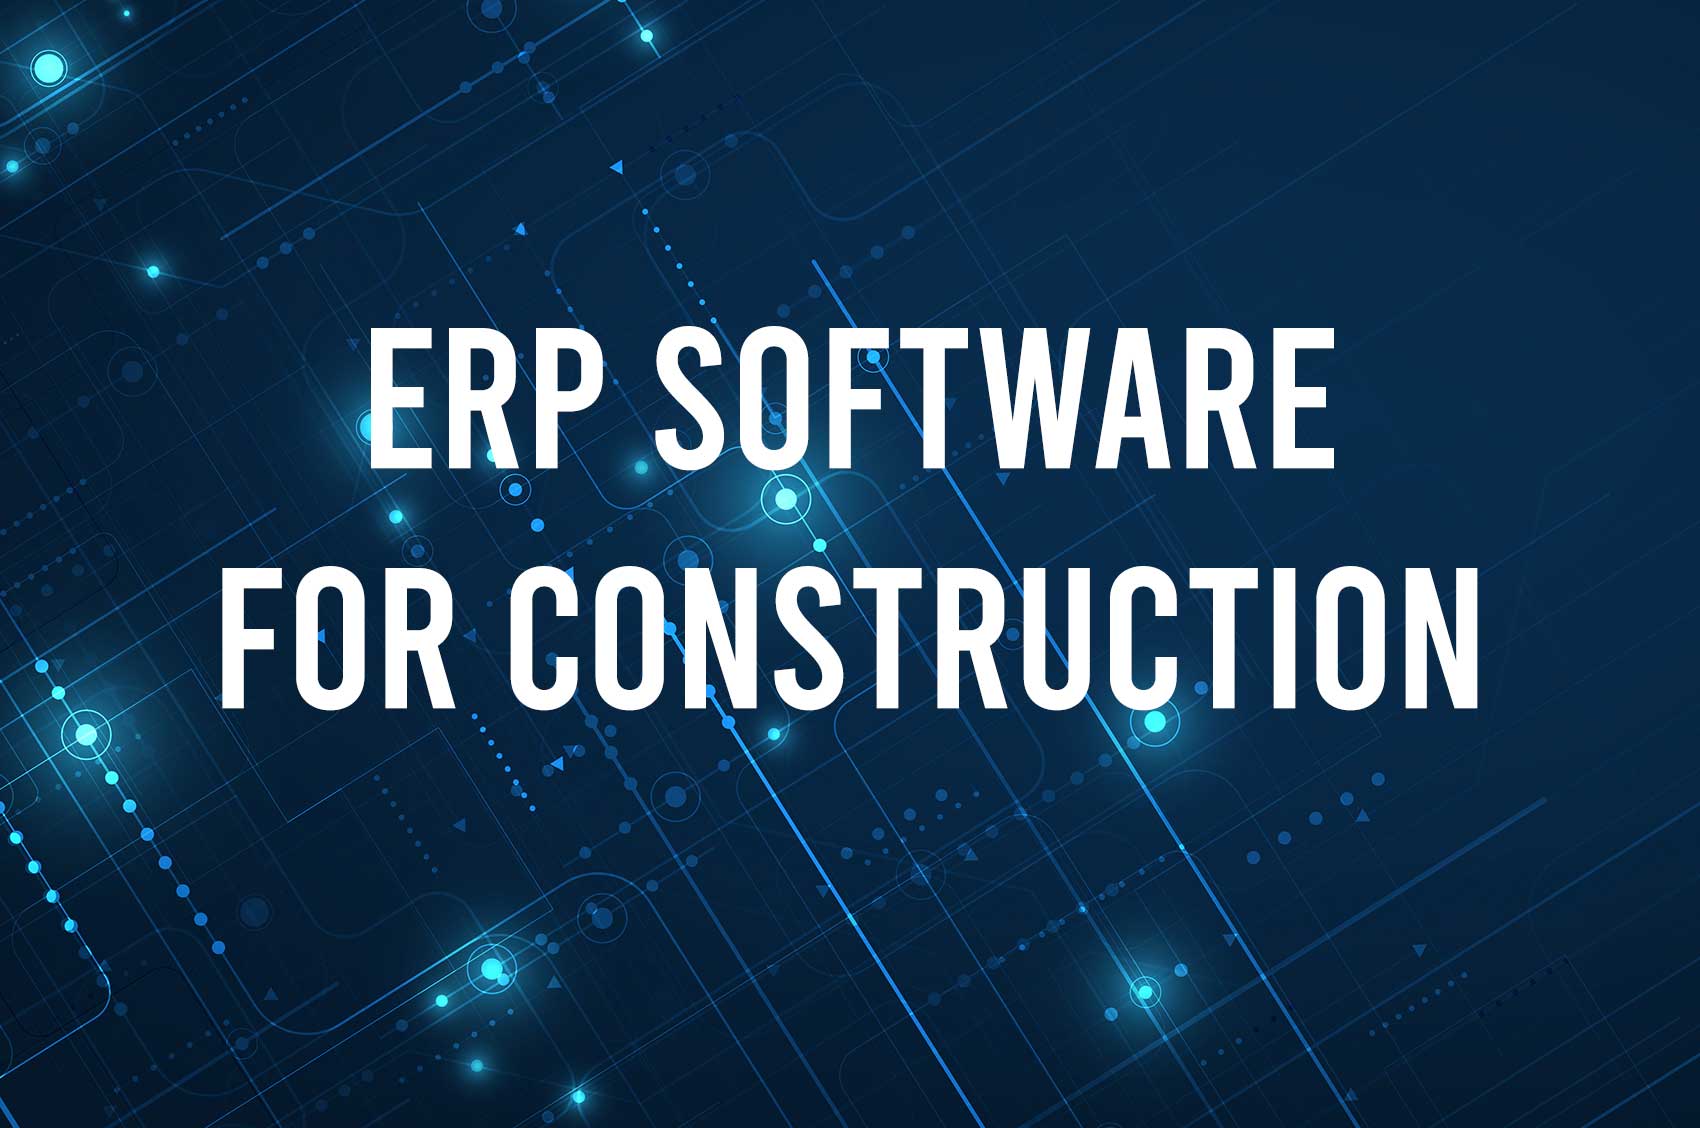 เปลี่ยนผ่านสู่ยุคดิจิทัลโดยใช้ระบบ ERP สำหรับงานก่อสร้างอย่างเต็มตัว